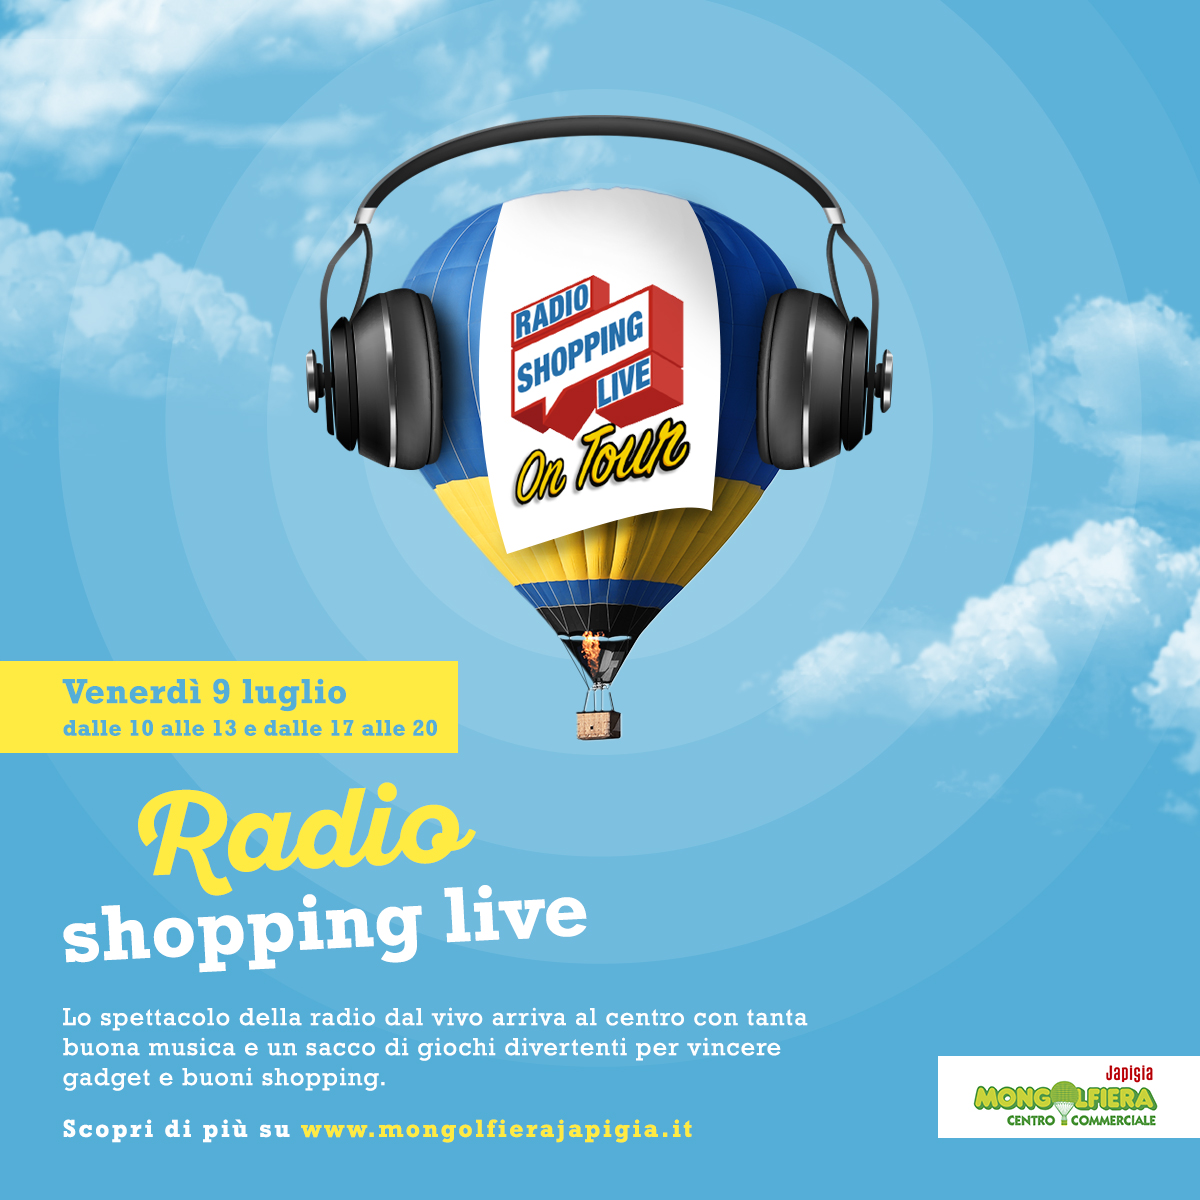 Radio Shopping Live on tour al Mongolfiera Japigia